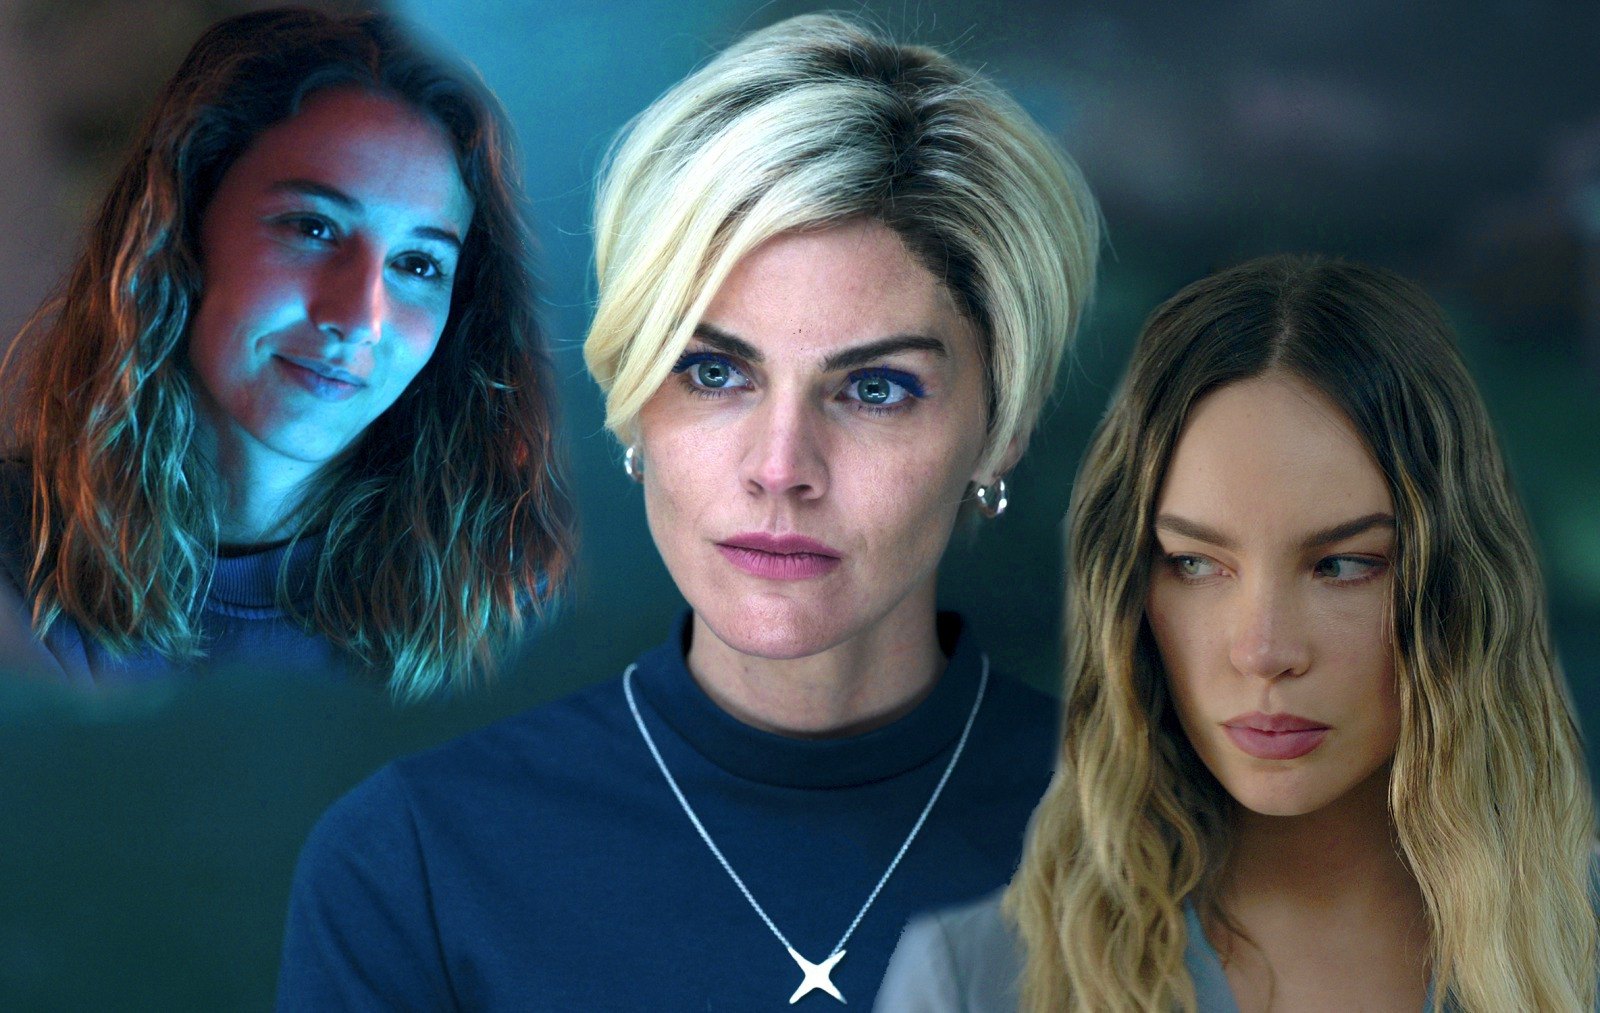 La segunda temporada de Bienvenidos a Edén trae consigo nuevos personajes y peligros inesperados, estreno el viernes 21 de abril solo en Netflix